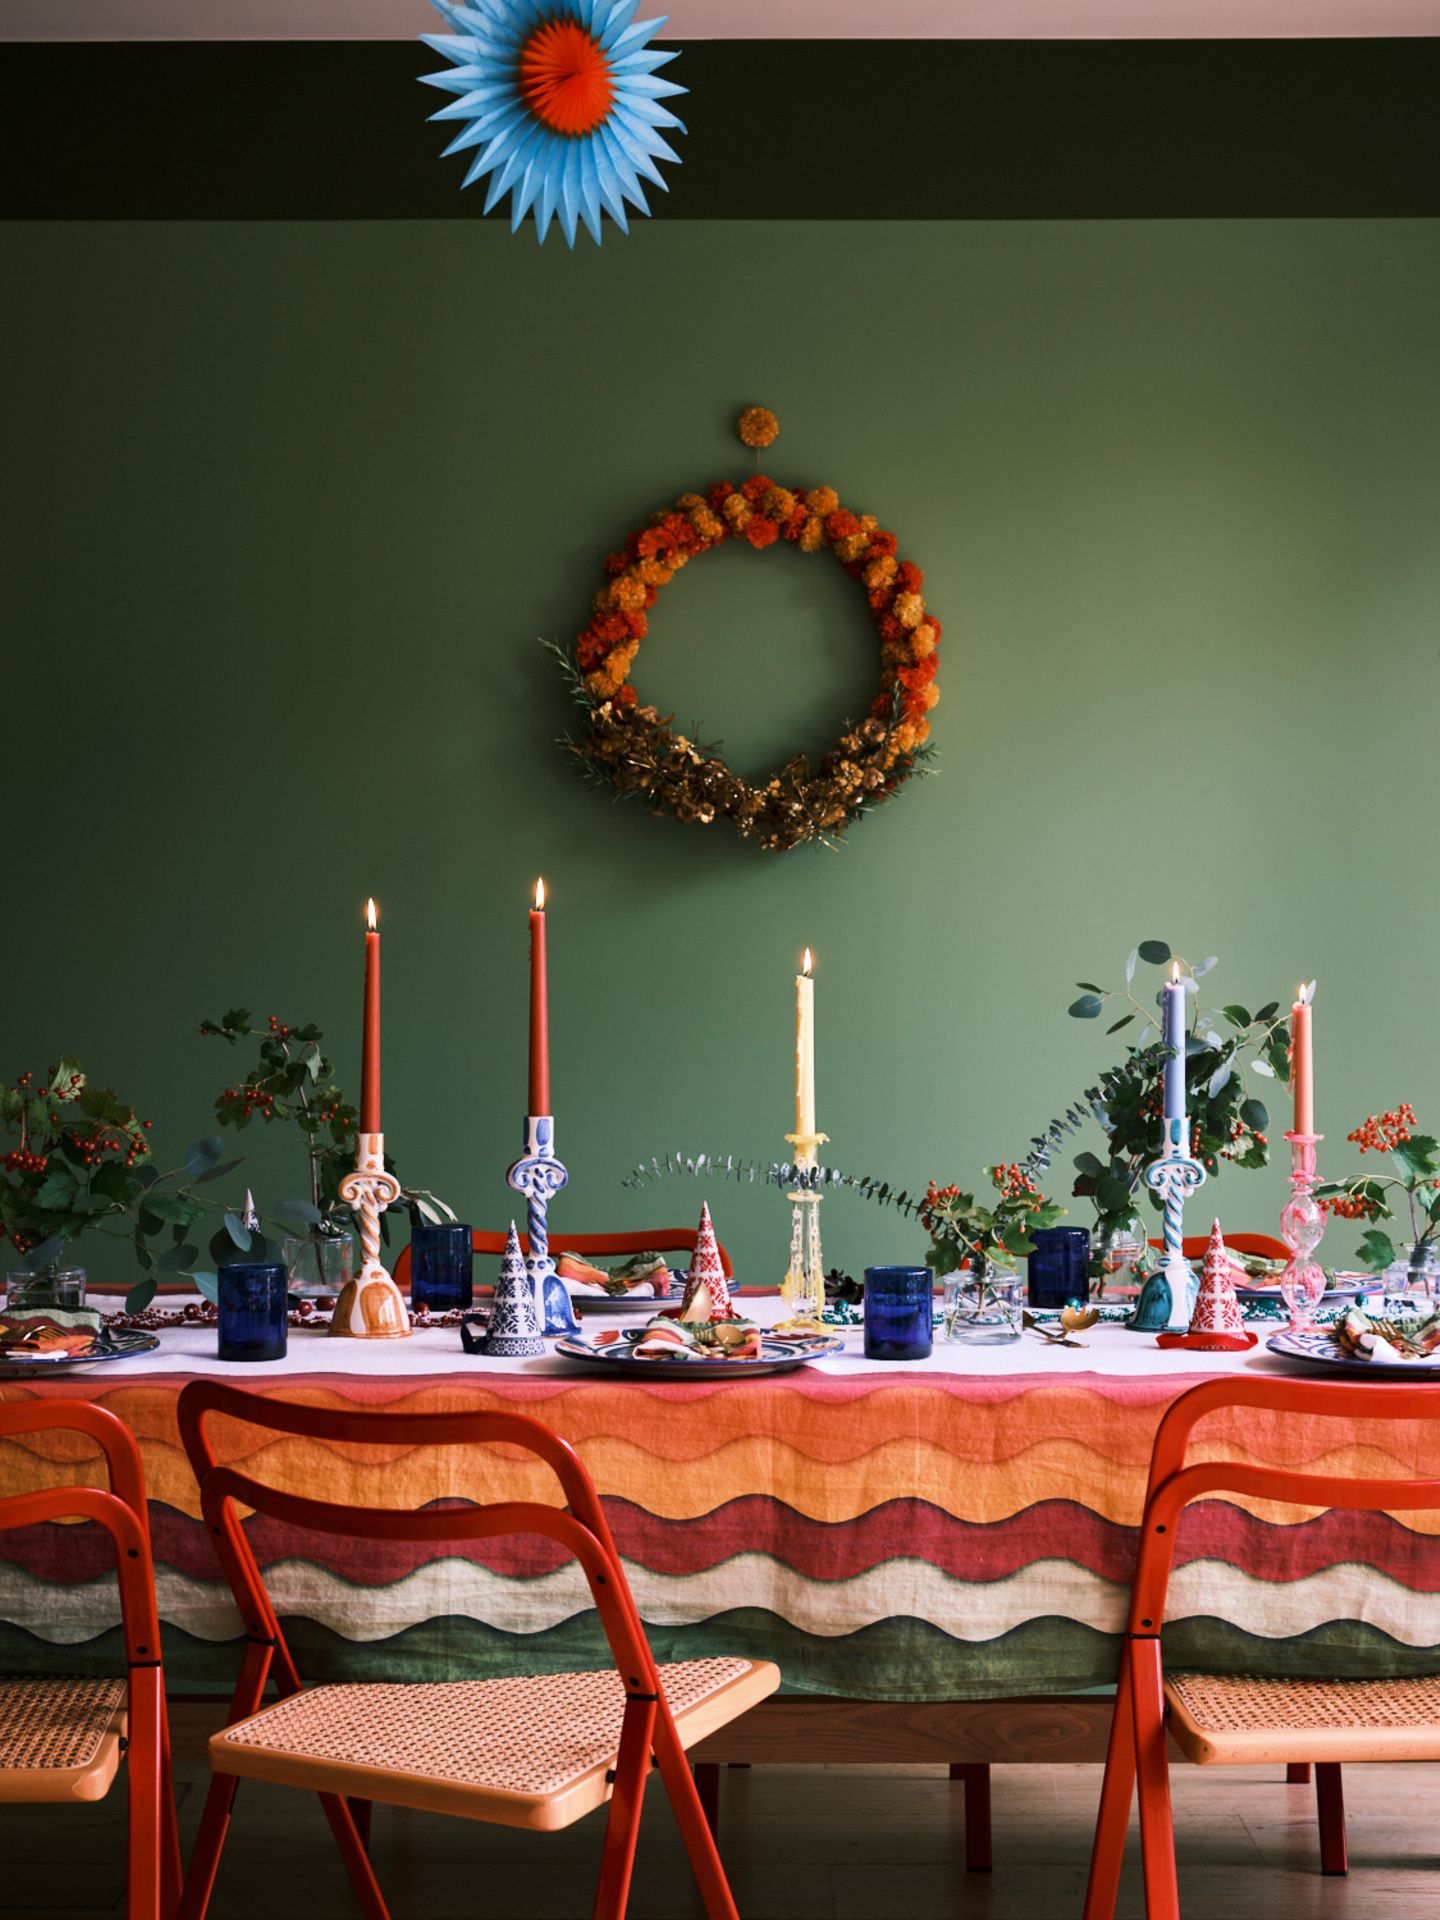 Bunt gedeckter Tisch in allen Regenbogenfarben mit Pompomkranz an grüner Wand und weihnachtlichen Sträußen mit Eukalyptus